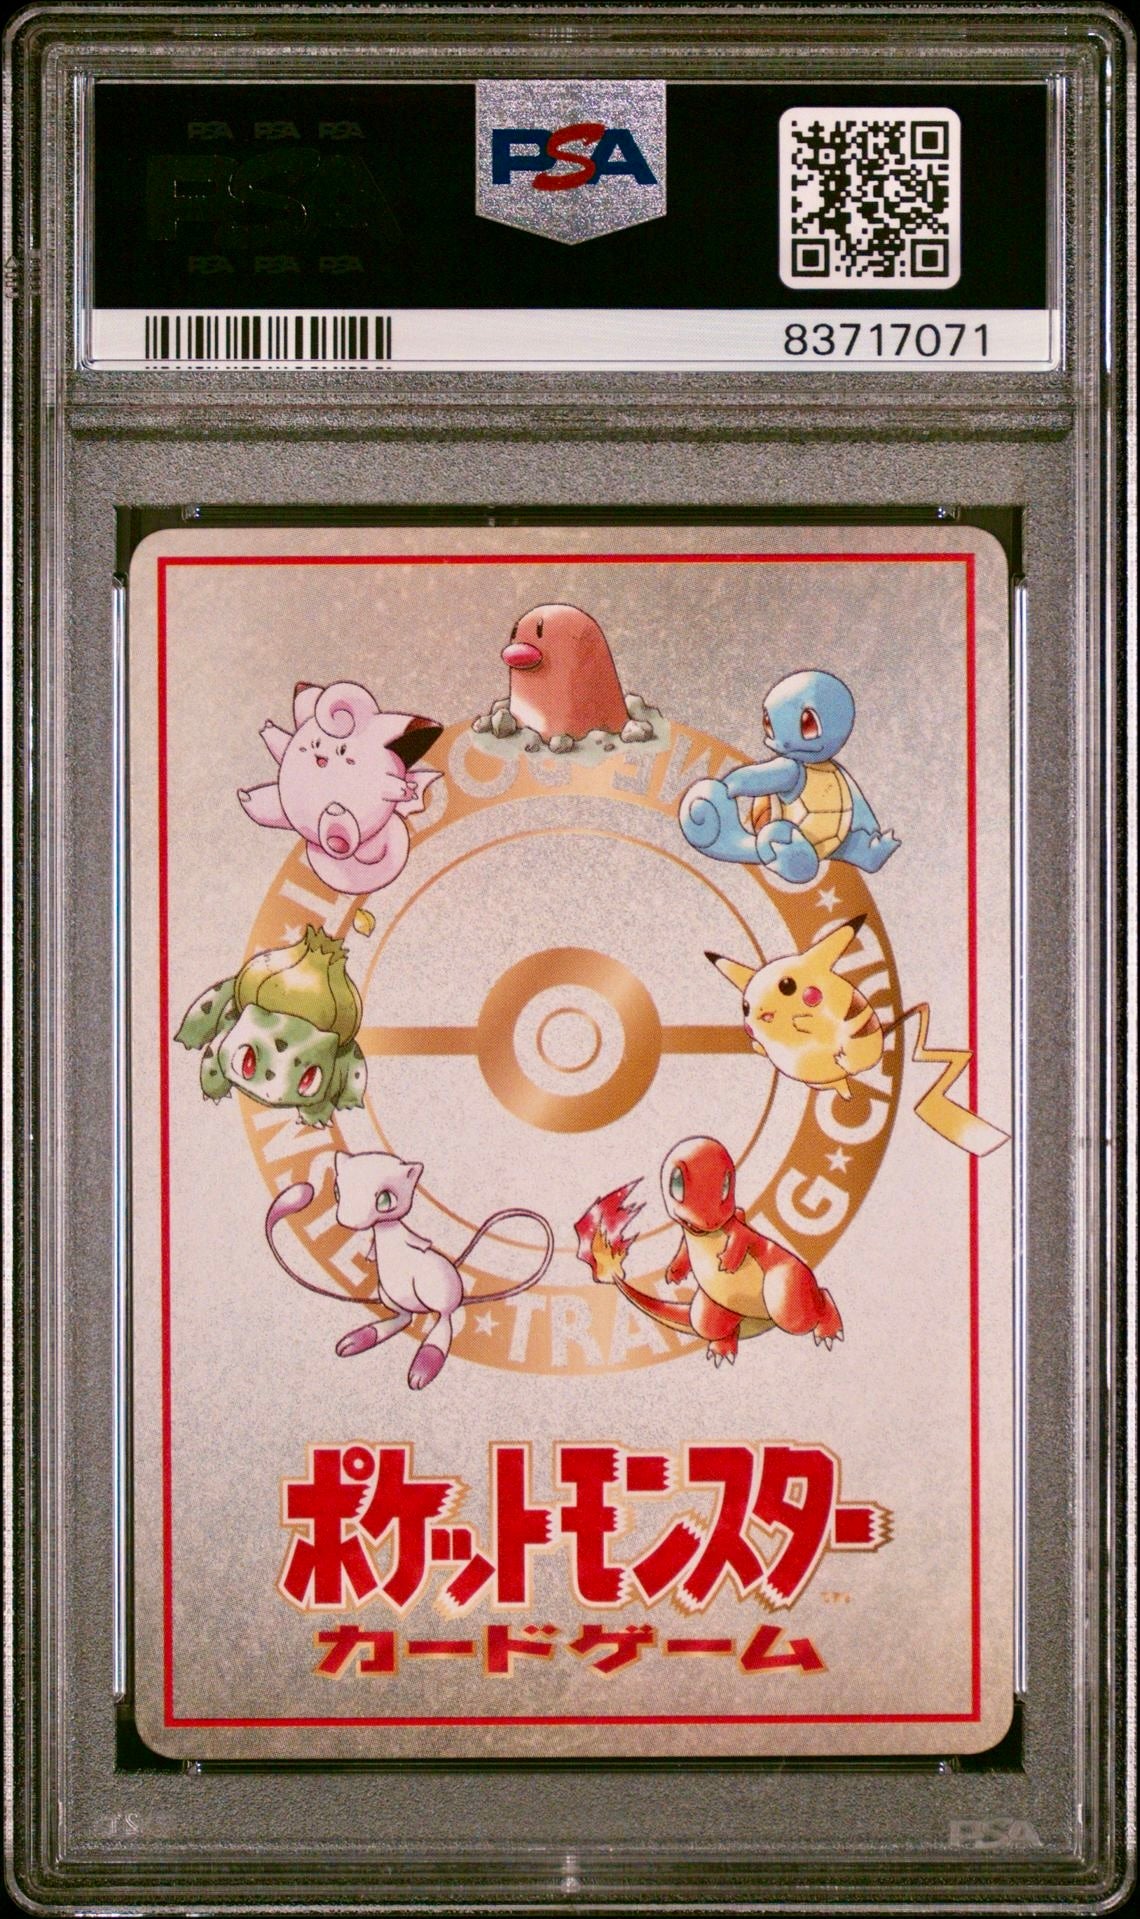 PSA 10 - Extra Rule 3v3 Dugtrio Japanese Vending Series 3 - Pokemon